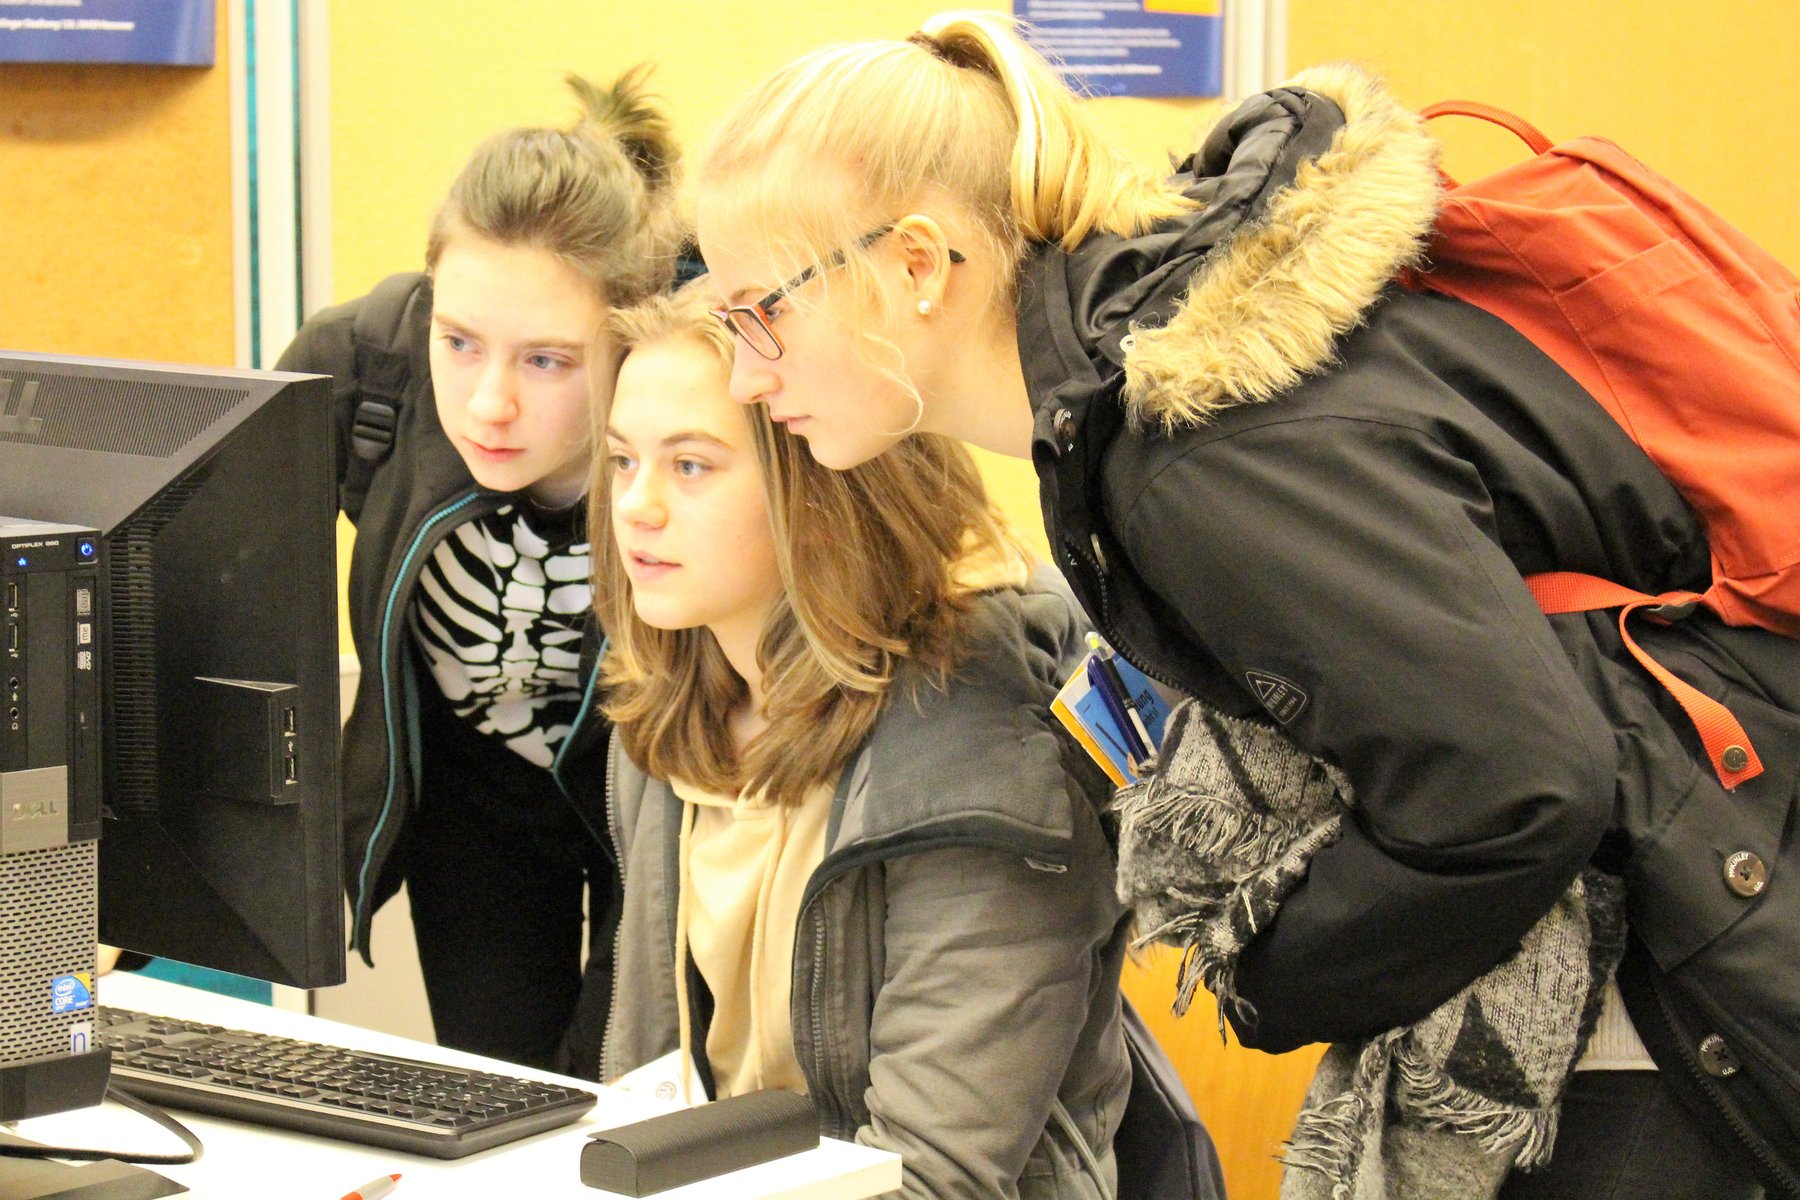 Drei Schülerinnen beugen sich vor einem Computer und suchen erläutern den Inhalt der Bildschirmdarstellung